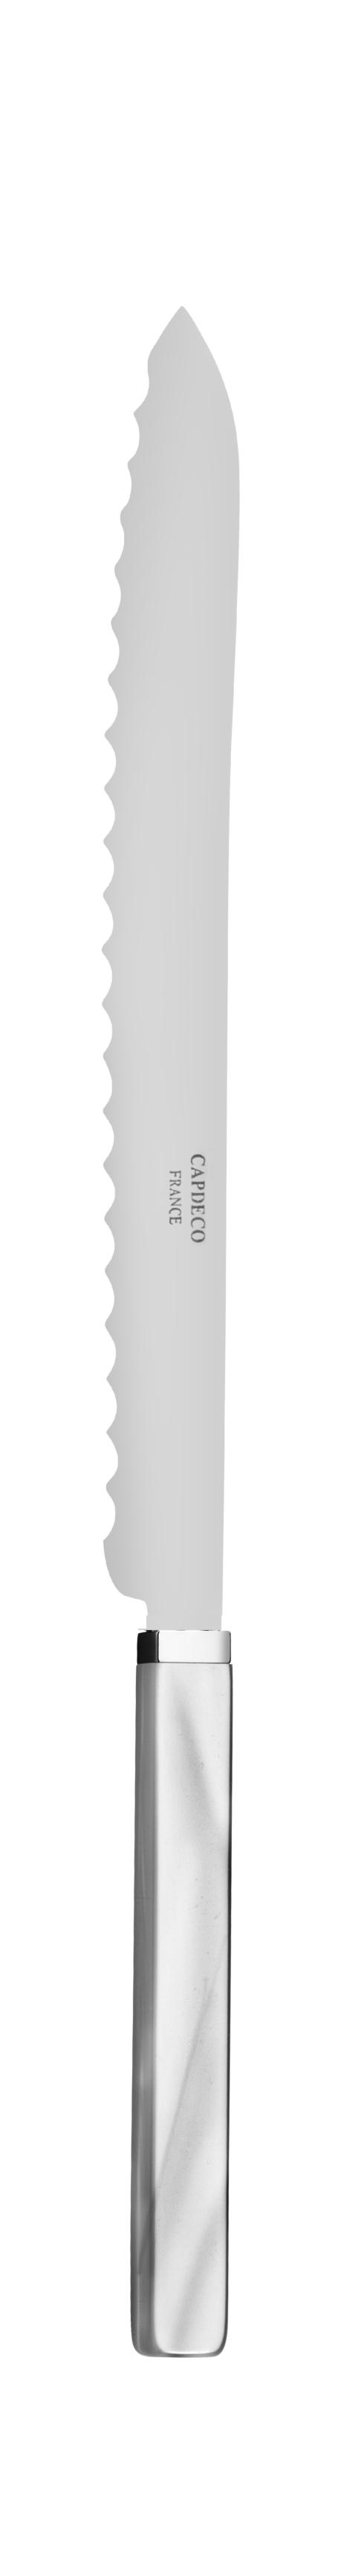 $66.00 Bread knife